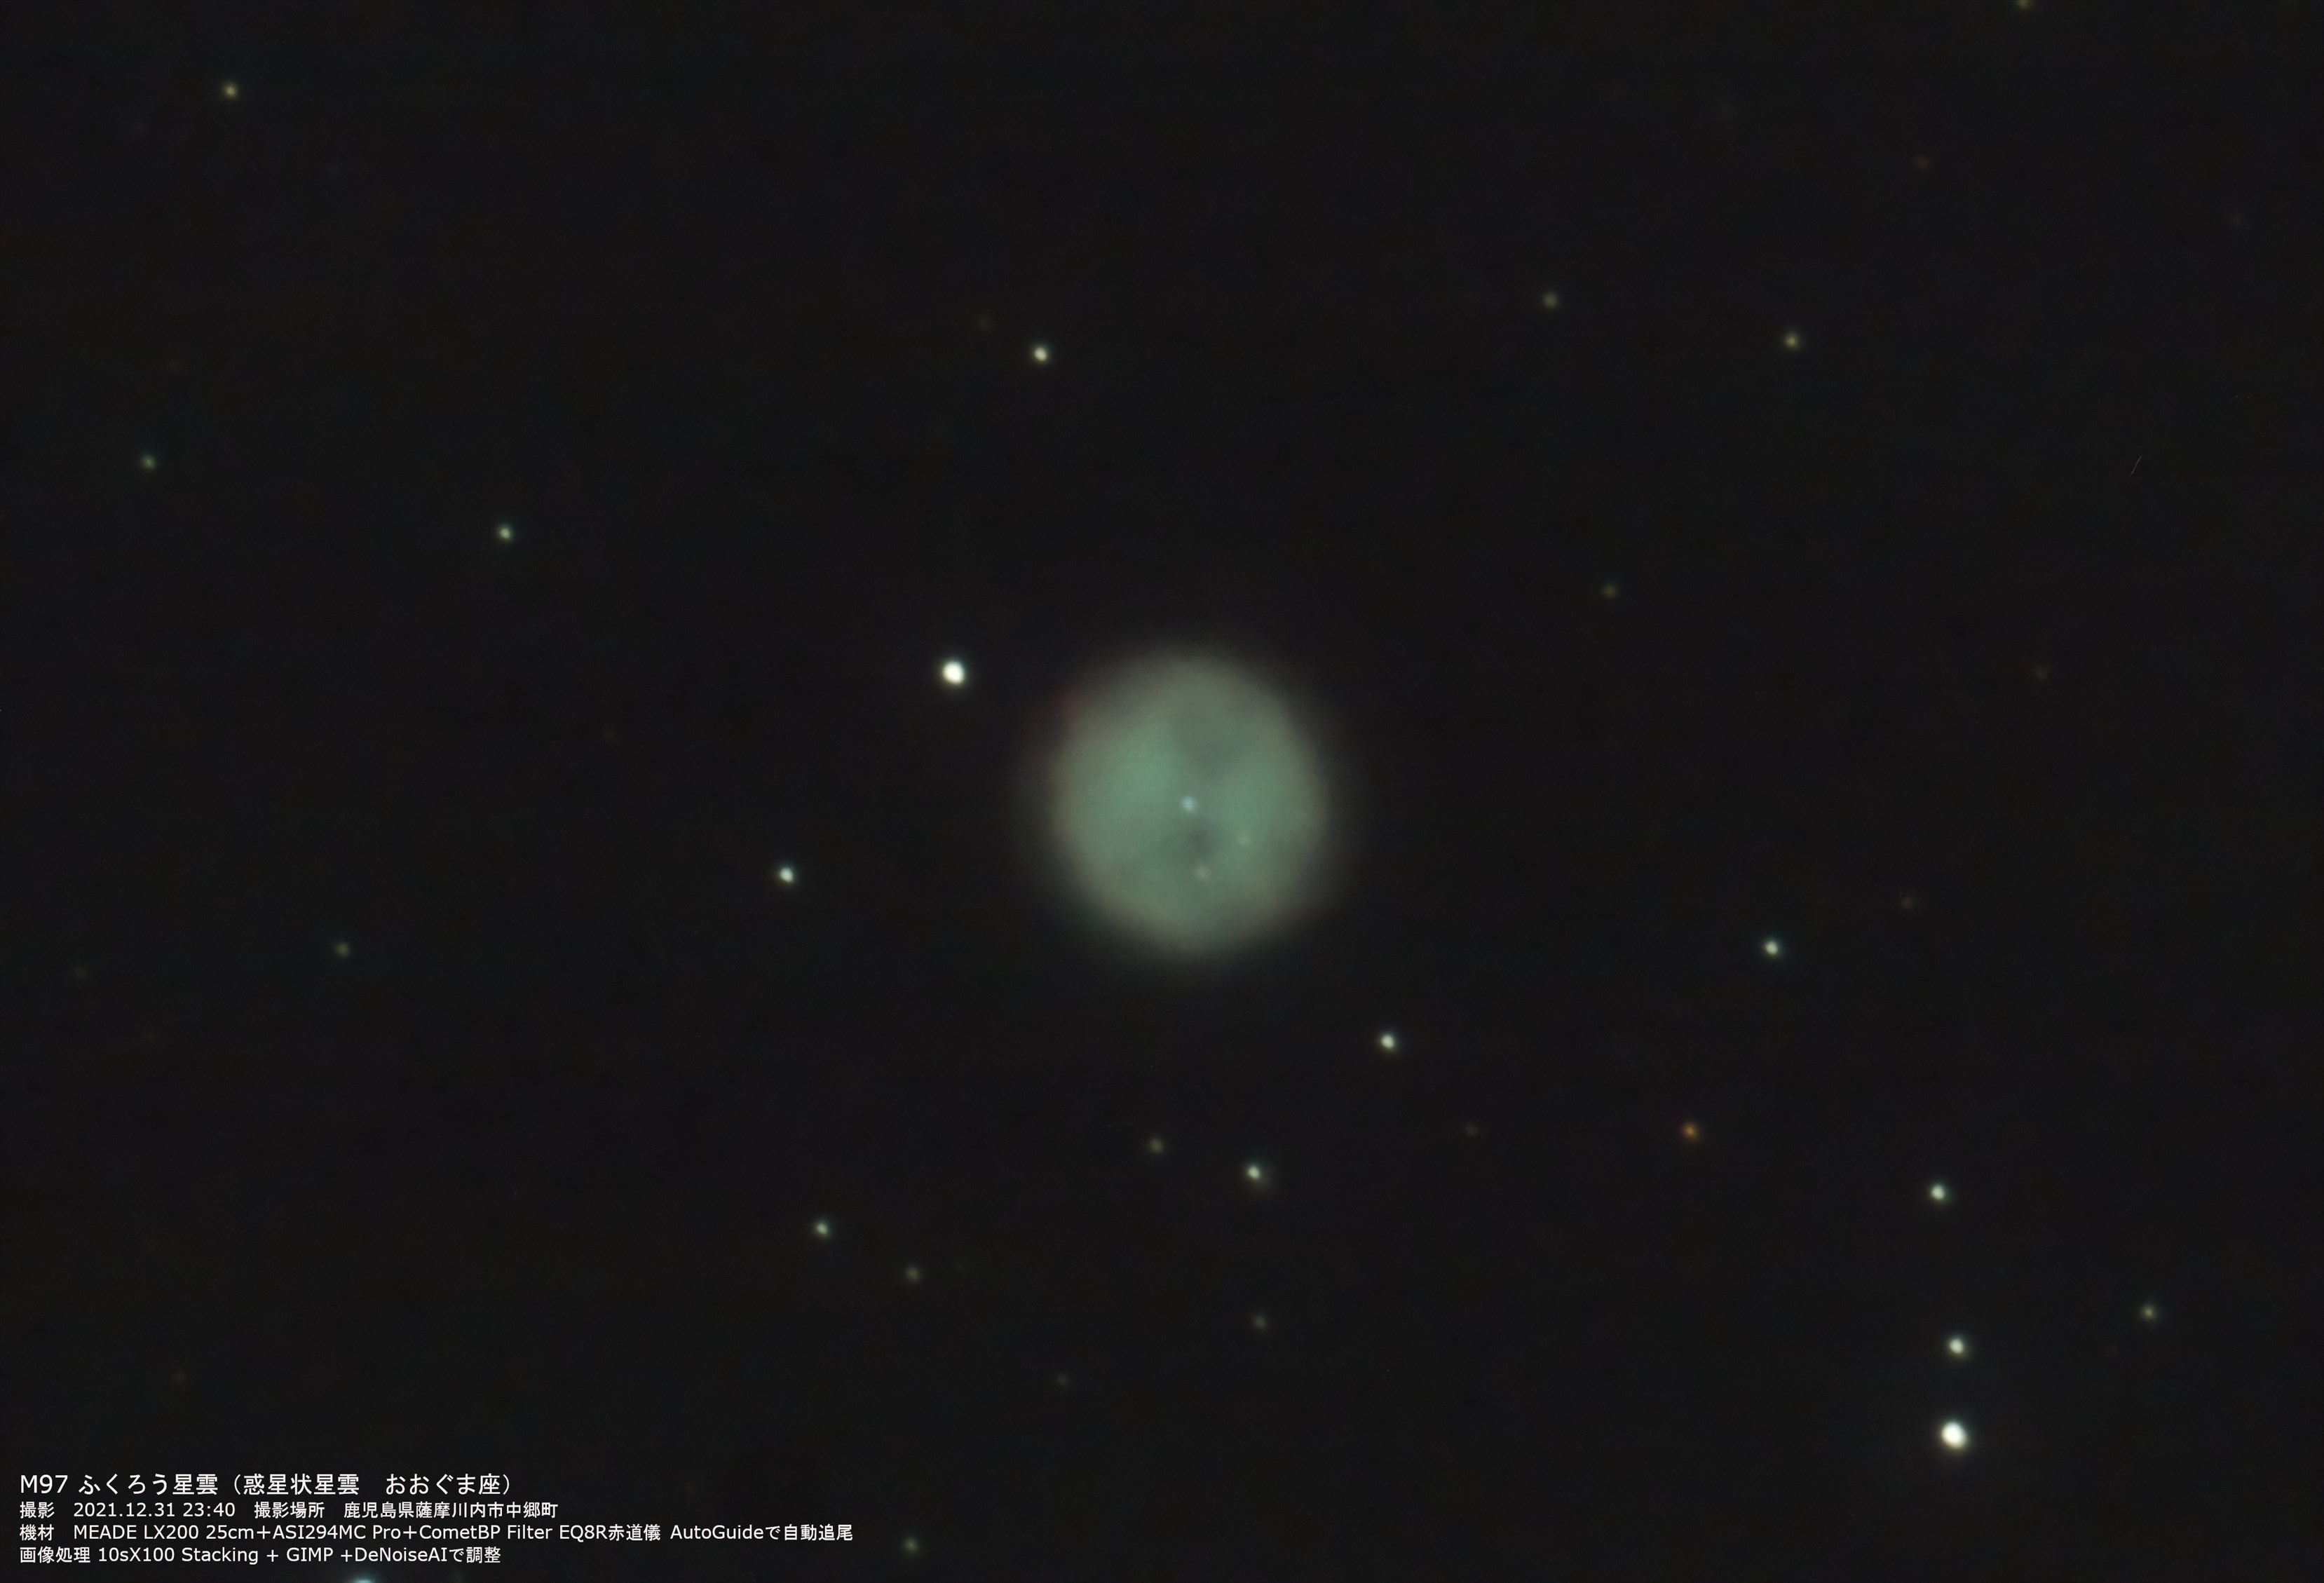 『M97 ふくろう星雲』(2021年12月31日)